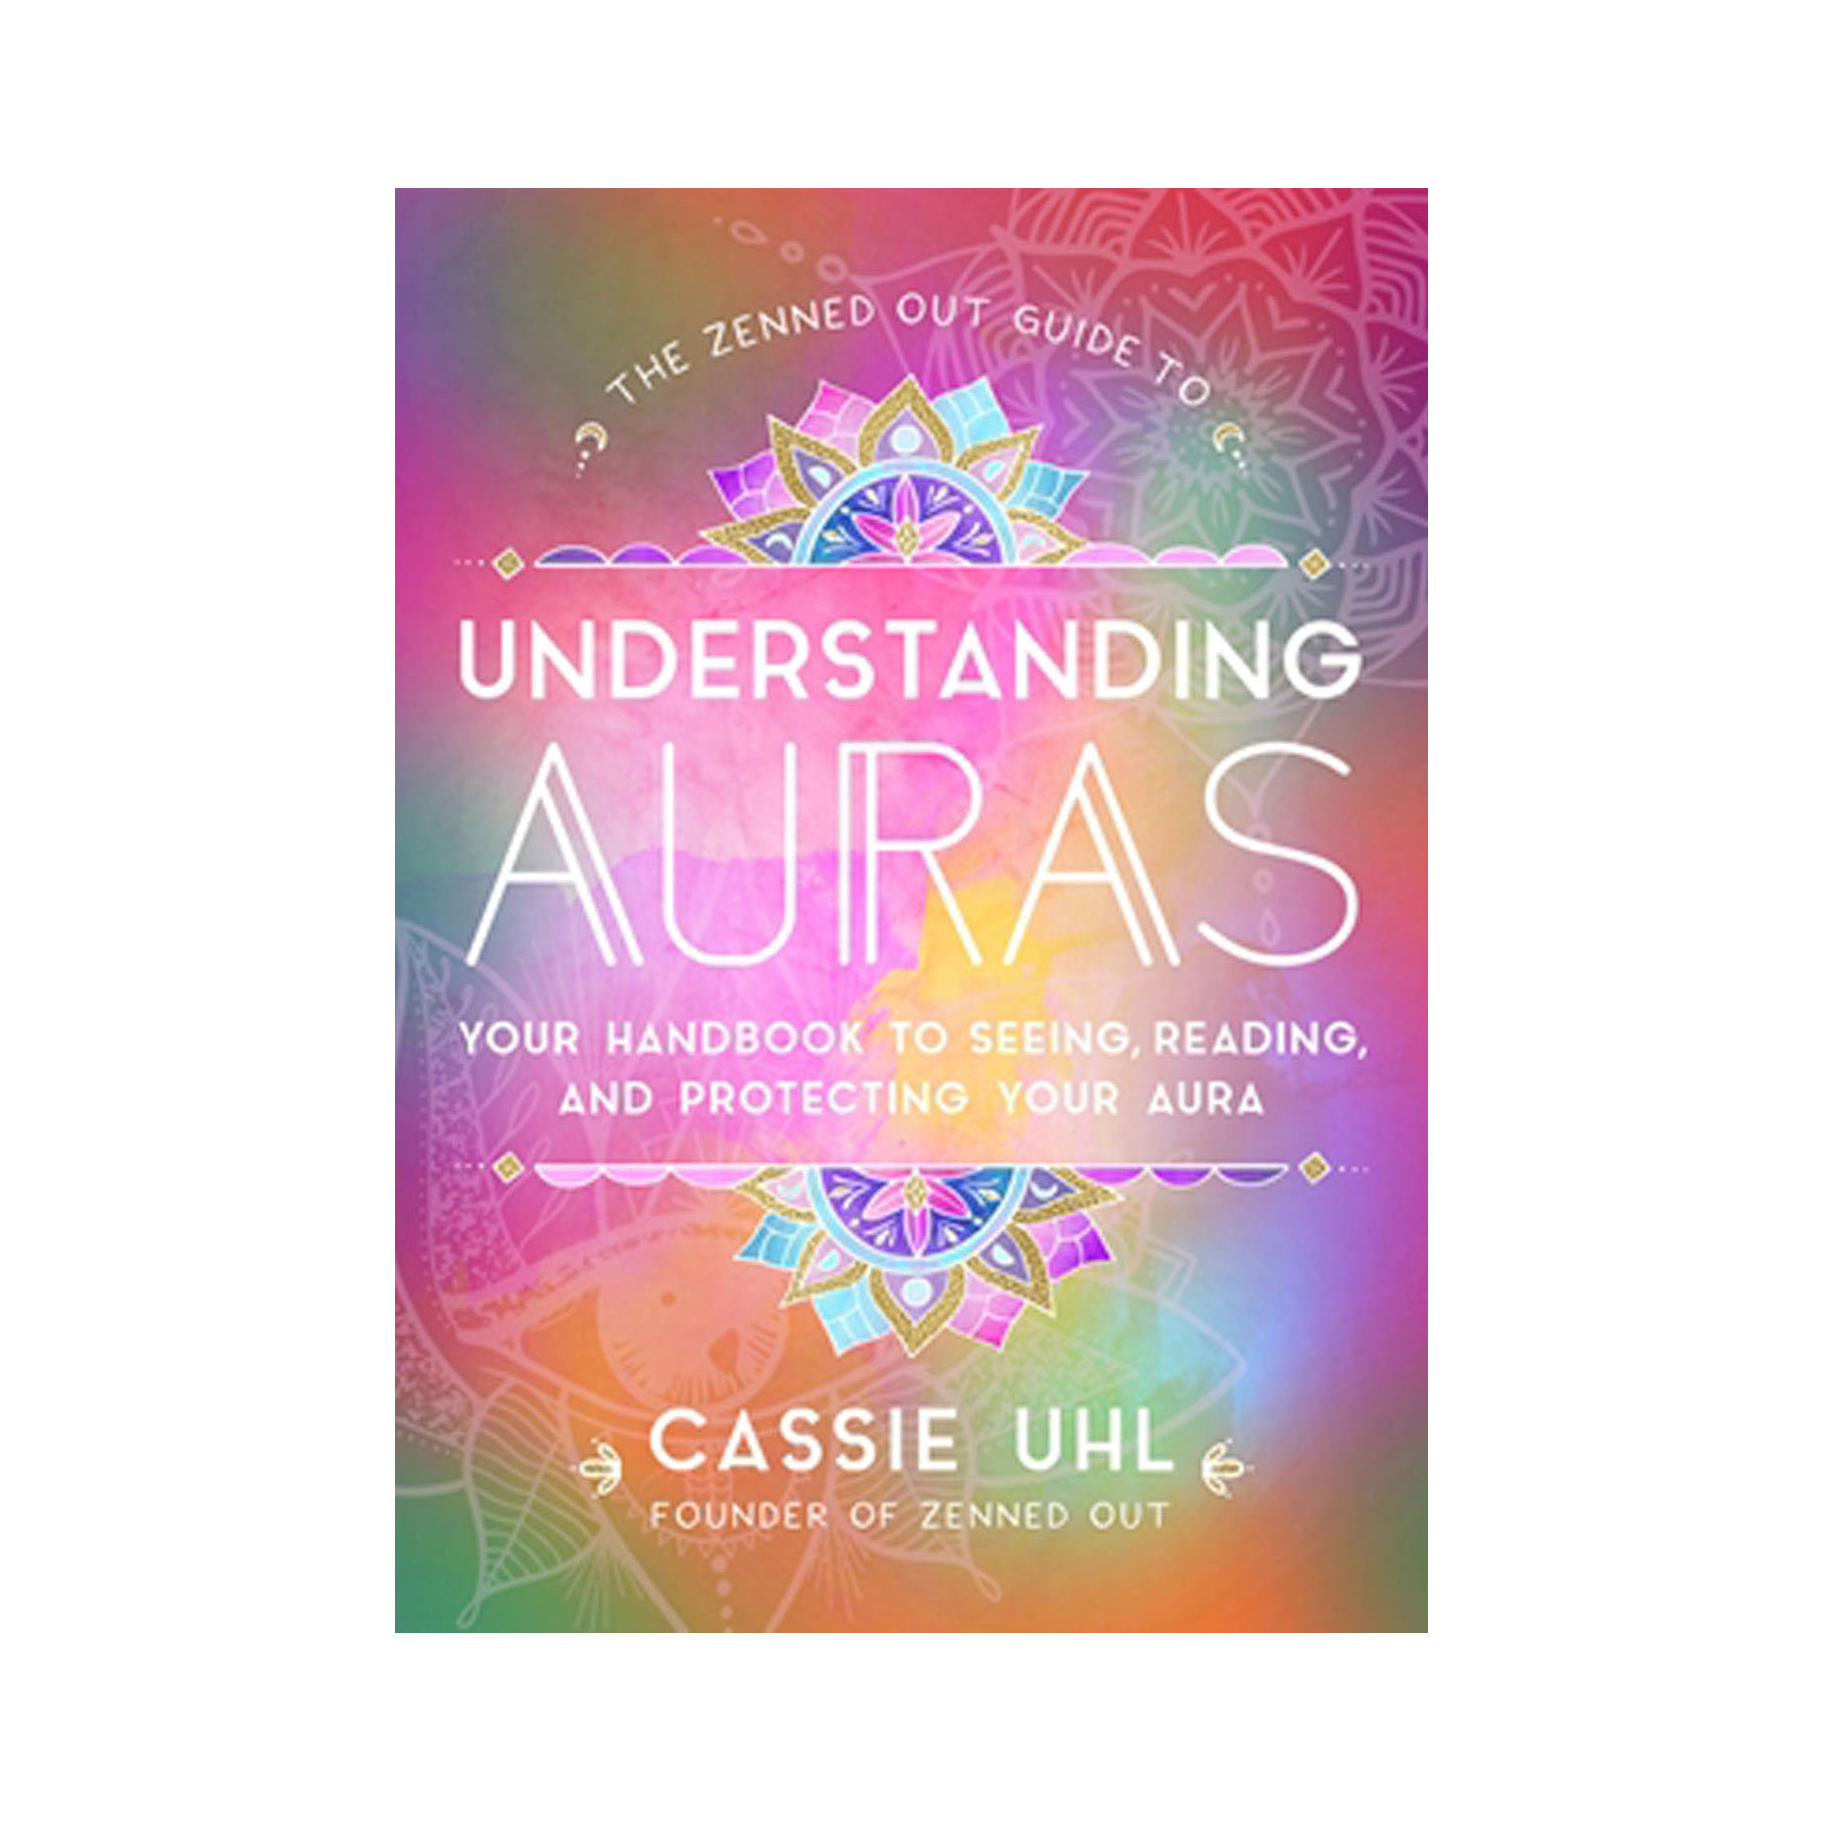 understanding_auras_by_cassie_uhl_1445x.png